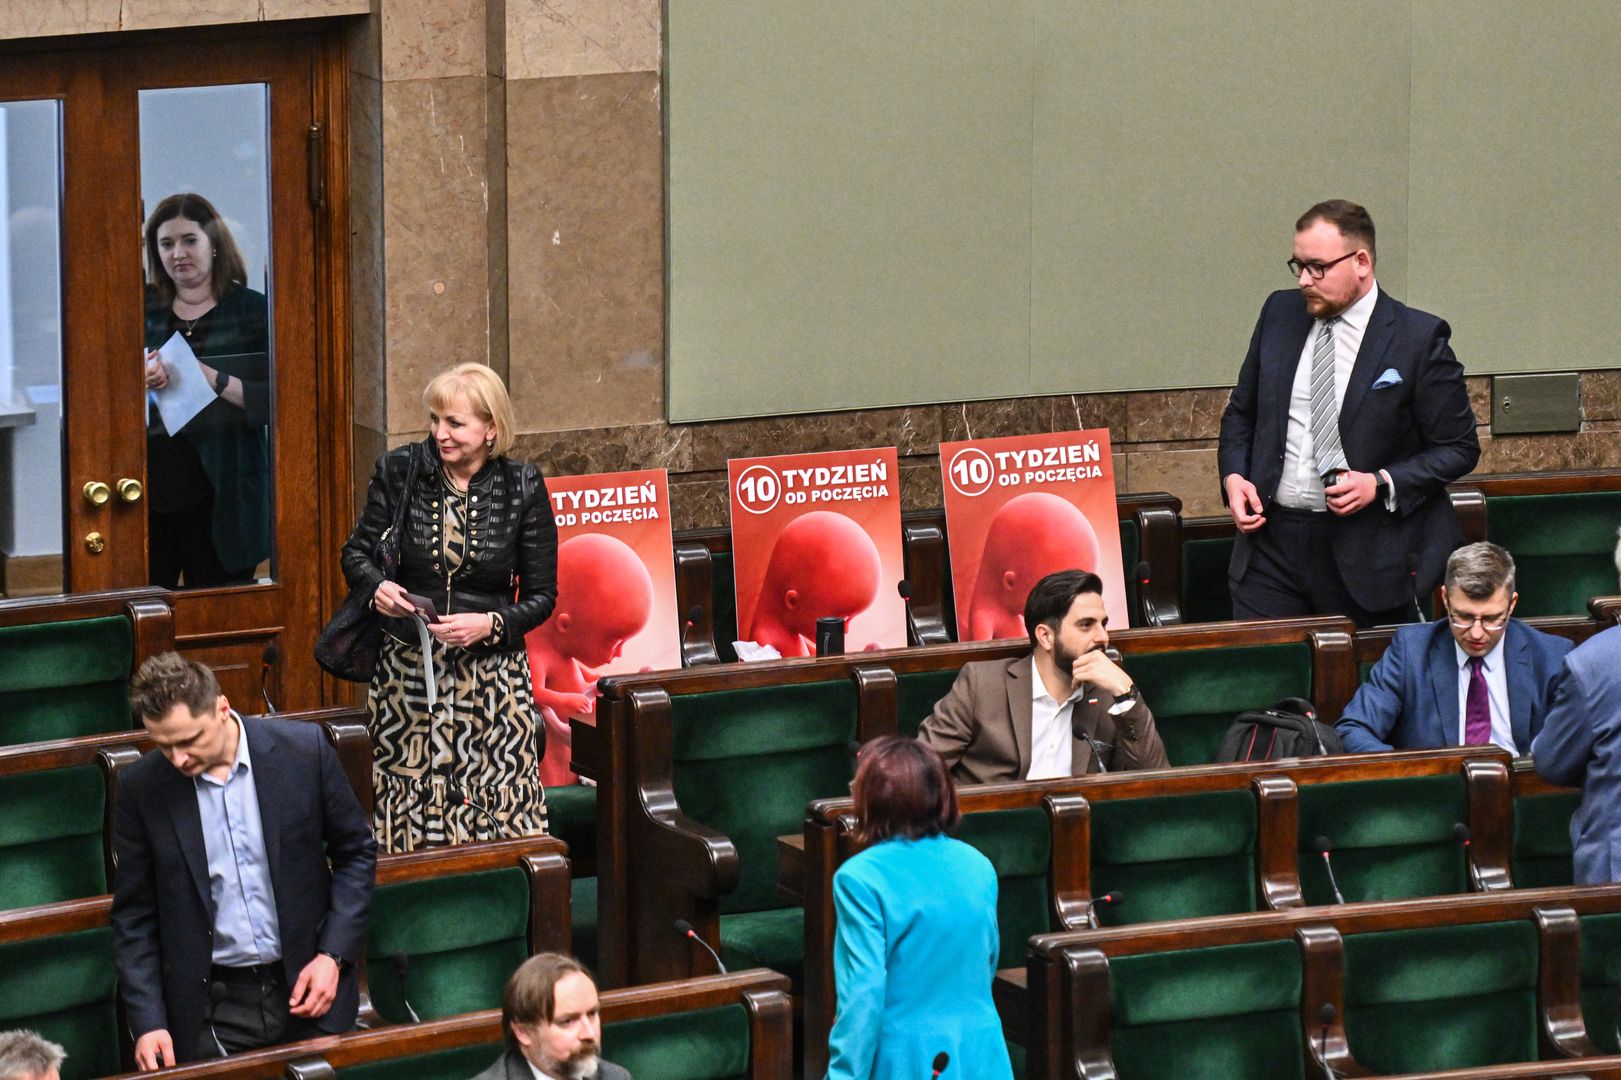 "Zasługa zmiany rządu". Zagraniczne media o ustawie aborcyjnej w Polsce